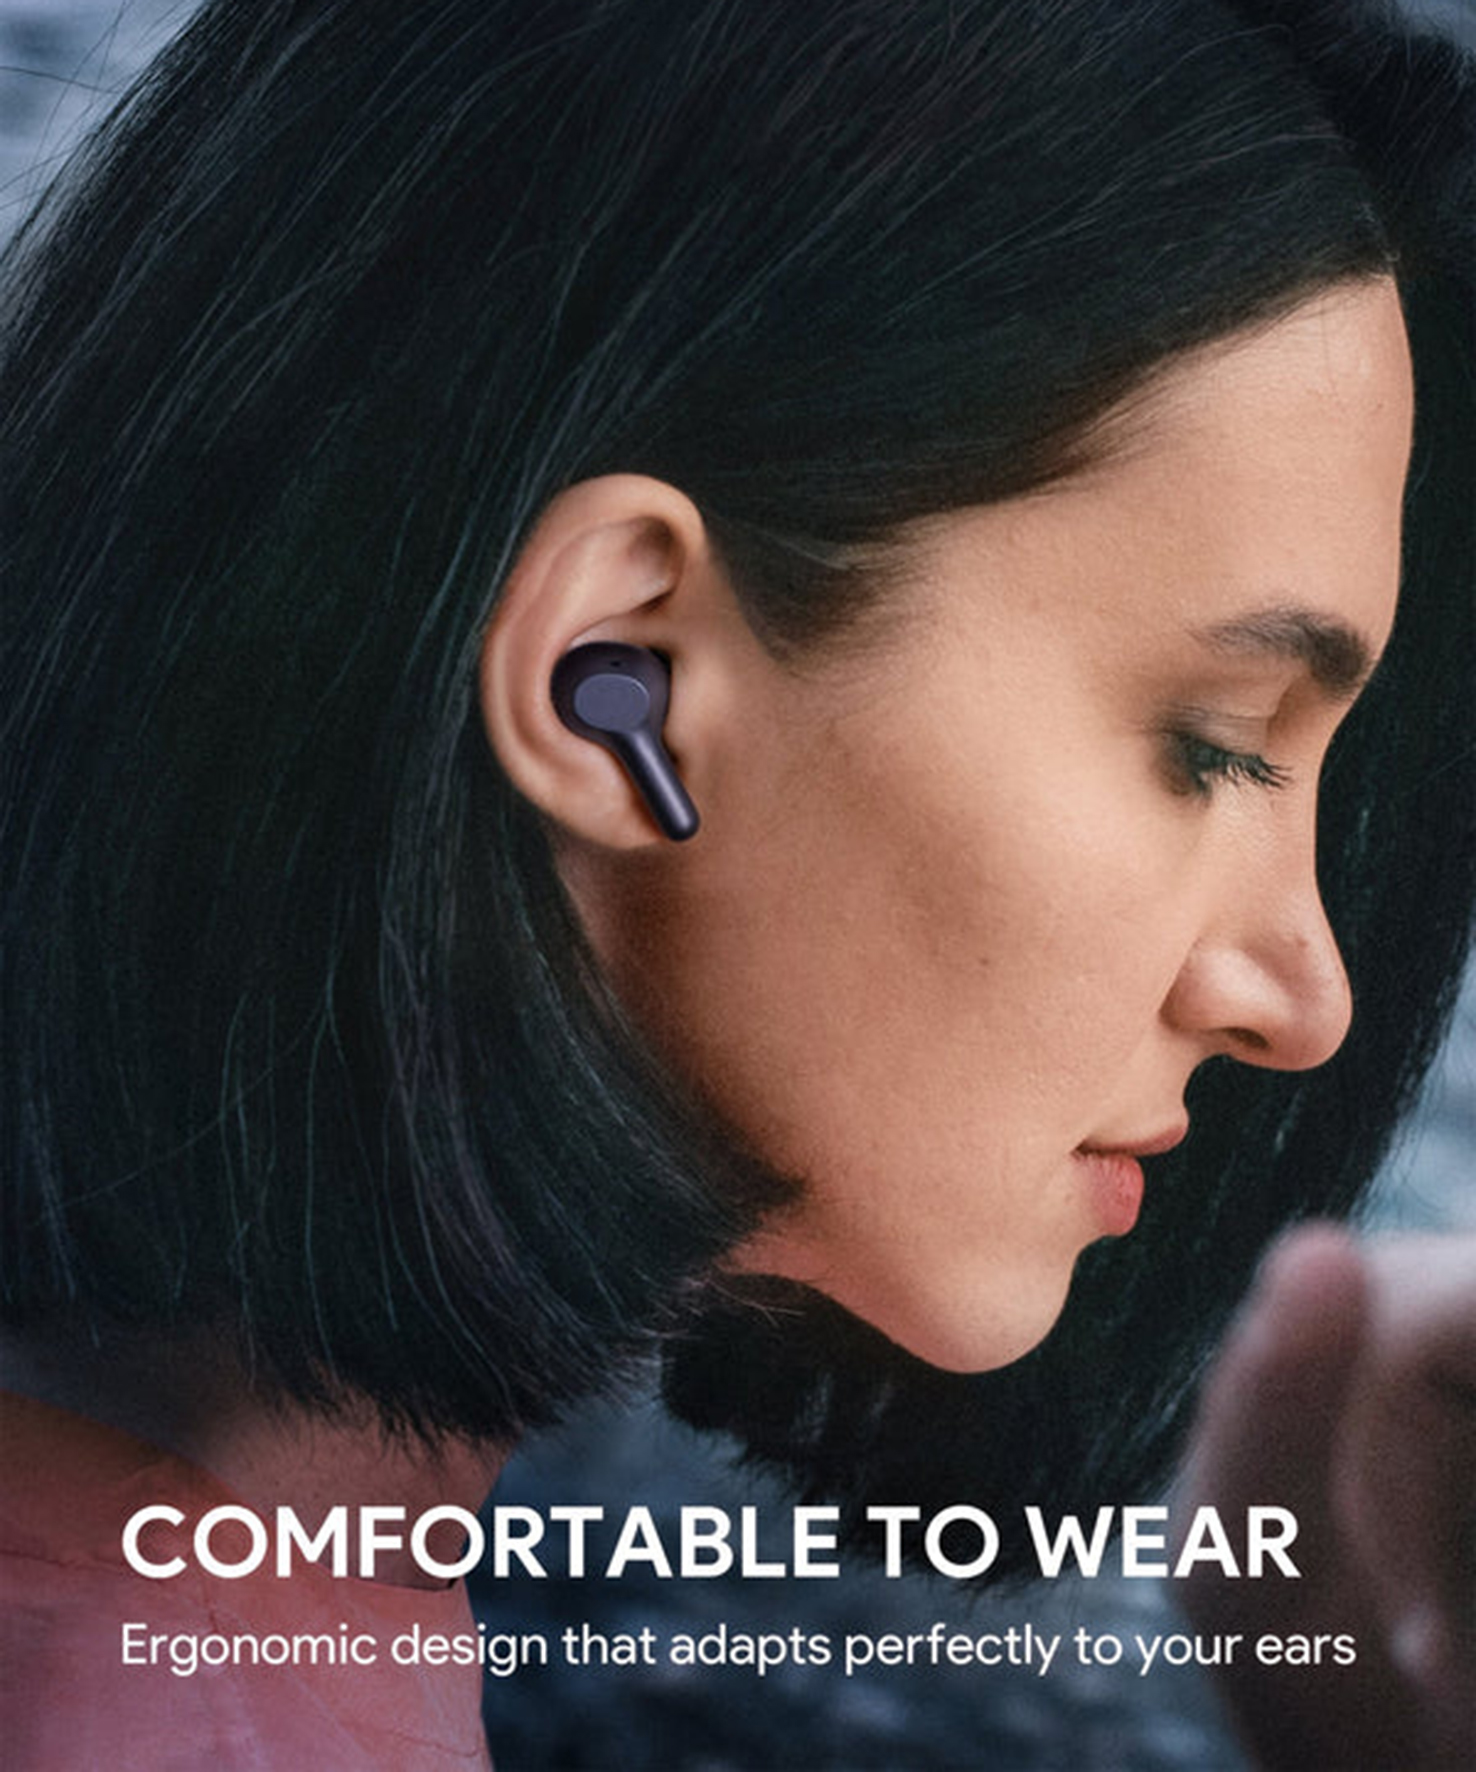 AUKEY Earbuds, Schwarz Bluetooth Kopfhörer In-ear